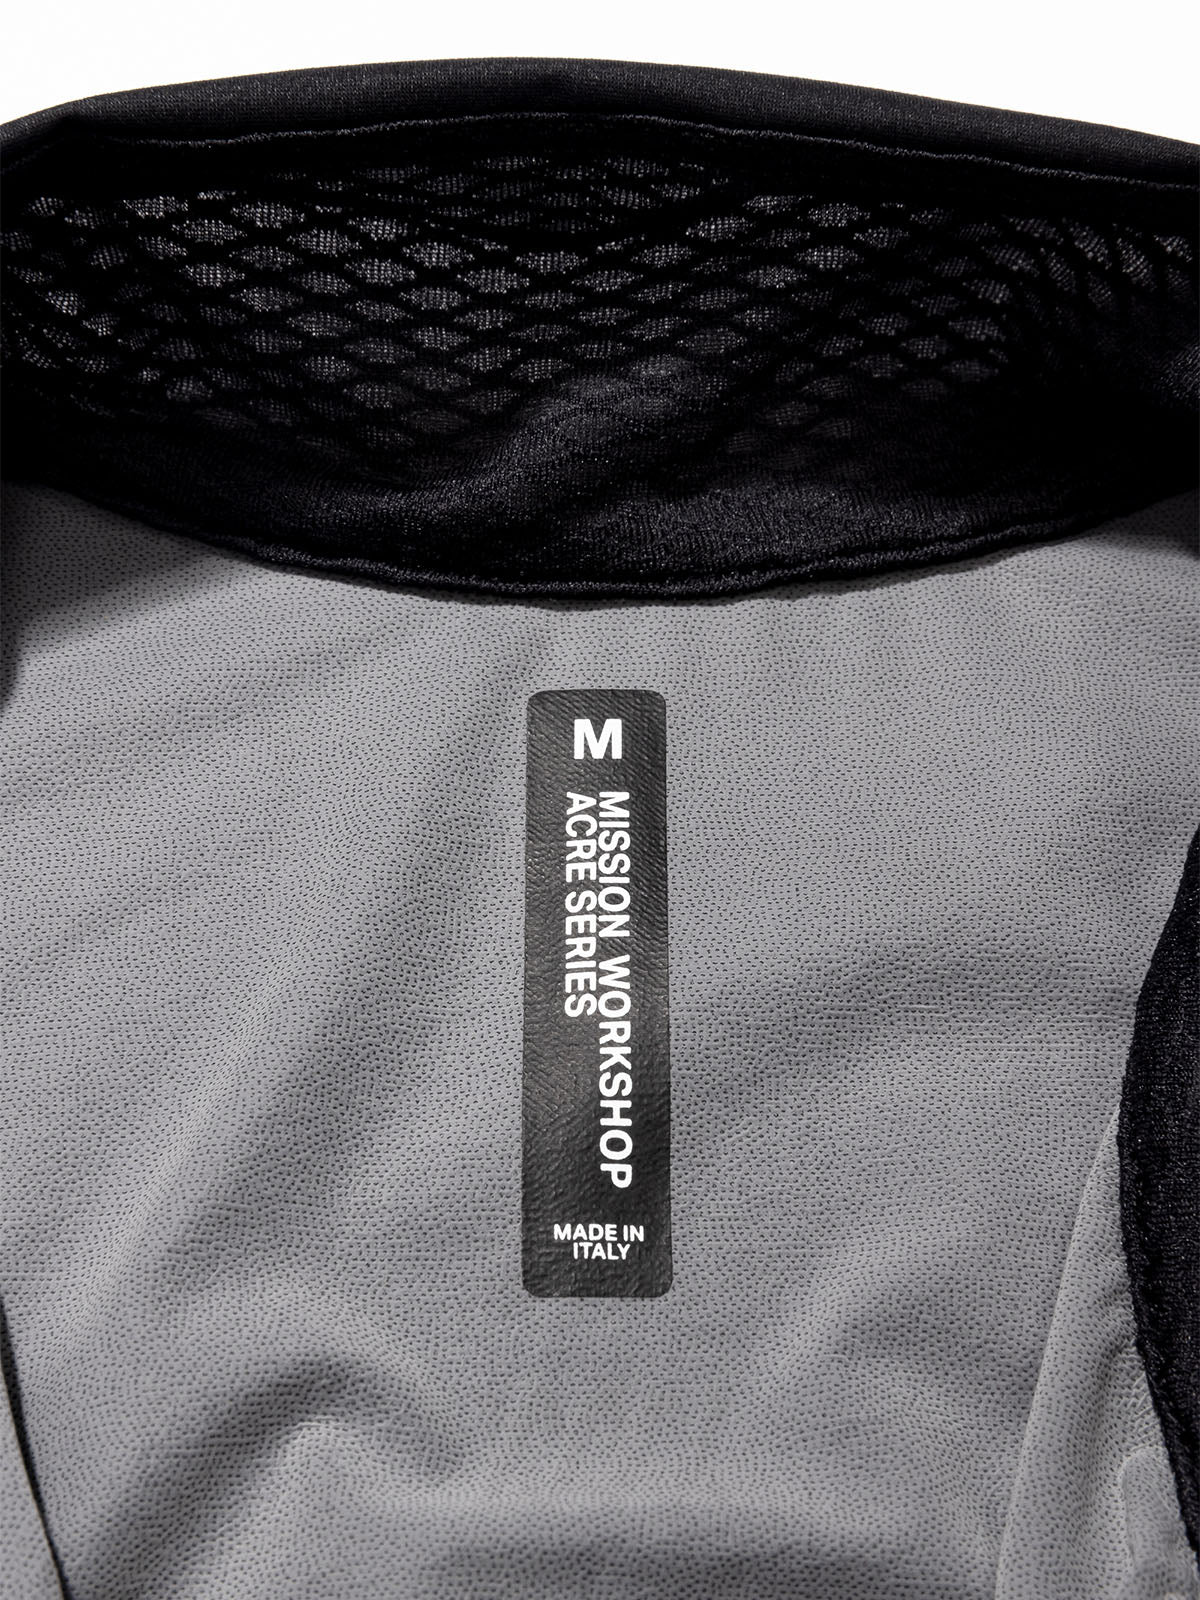 Altosphere Vest by Mission Workshop - Weatherproof Bags & Technical Apparel - San Francisco & Los Angeles - Construit pour durer - Garanti pour toujours